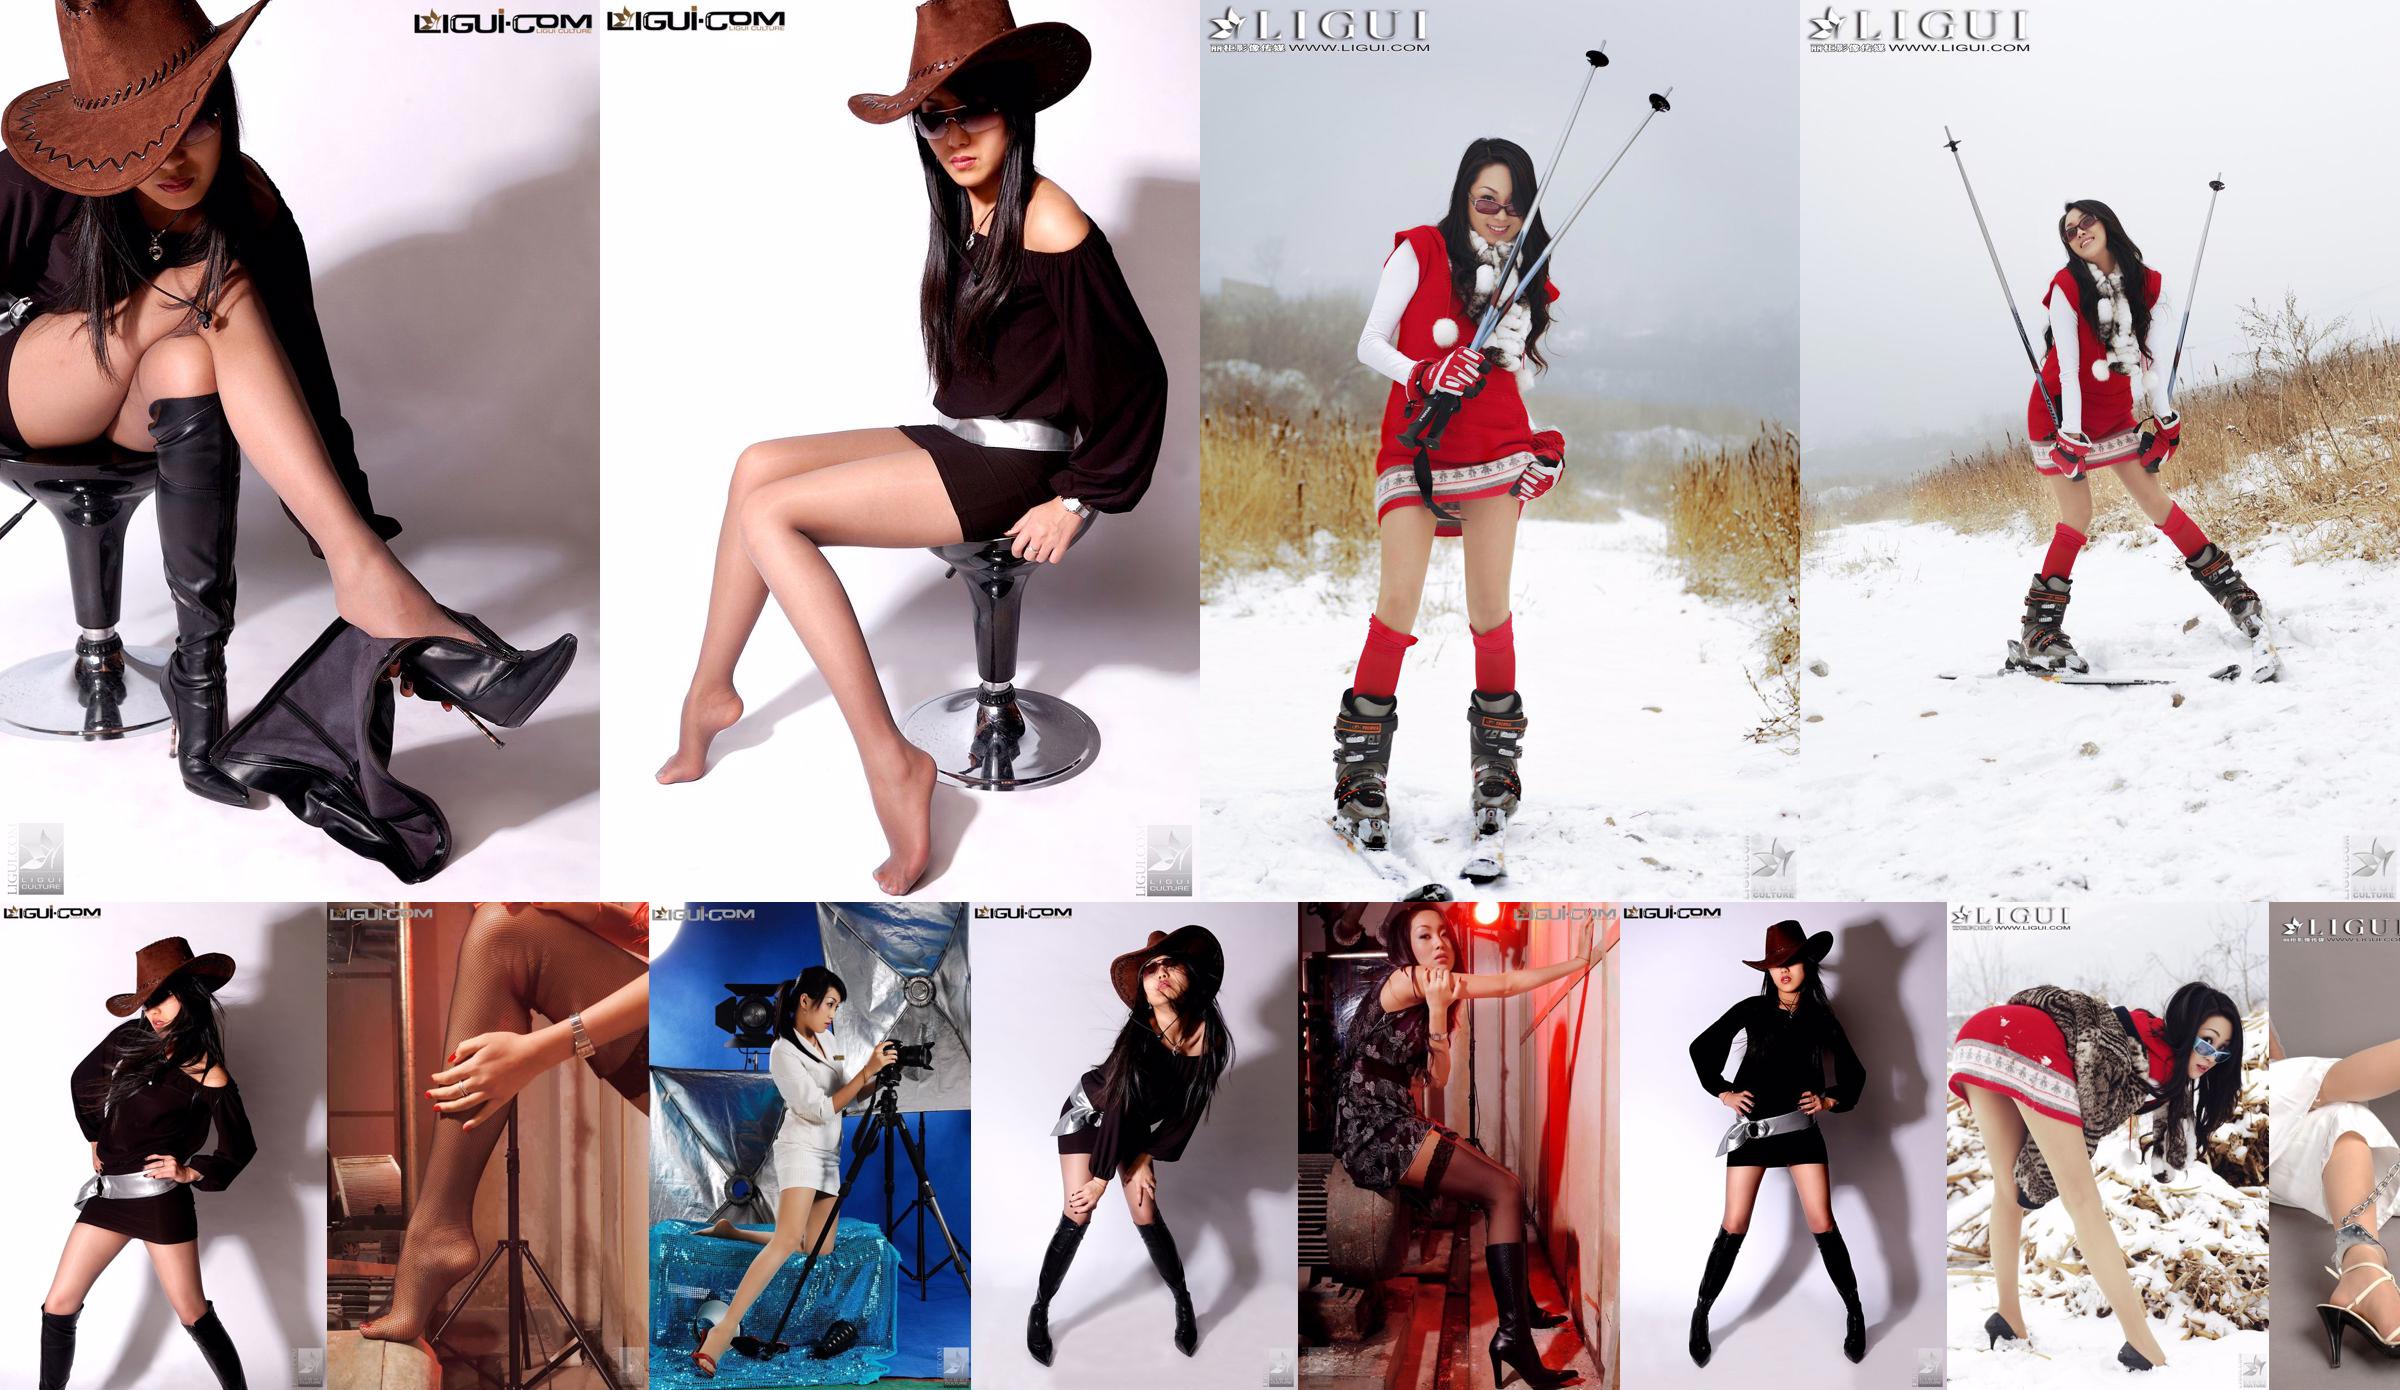 นางแบบลินดา "Snow Girl Silk Foot Show" คอลเลกชันบนและล่าง [丽柜 LiGui] รูปถ่ายขาและเท้าหยกที่สวยงาม No.8feaf9 หน้า 1